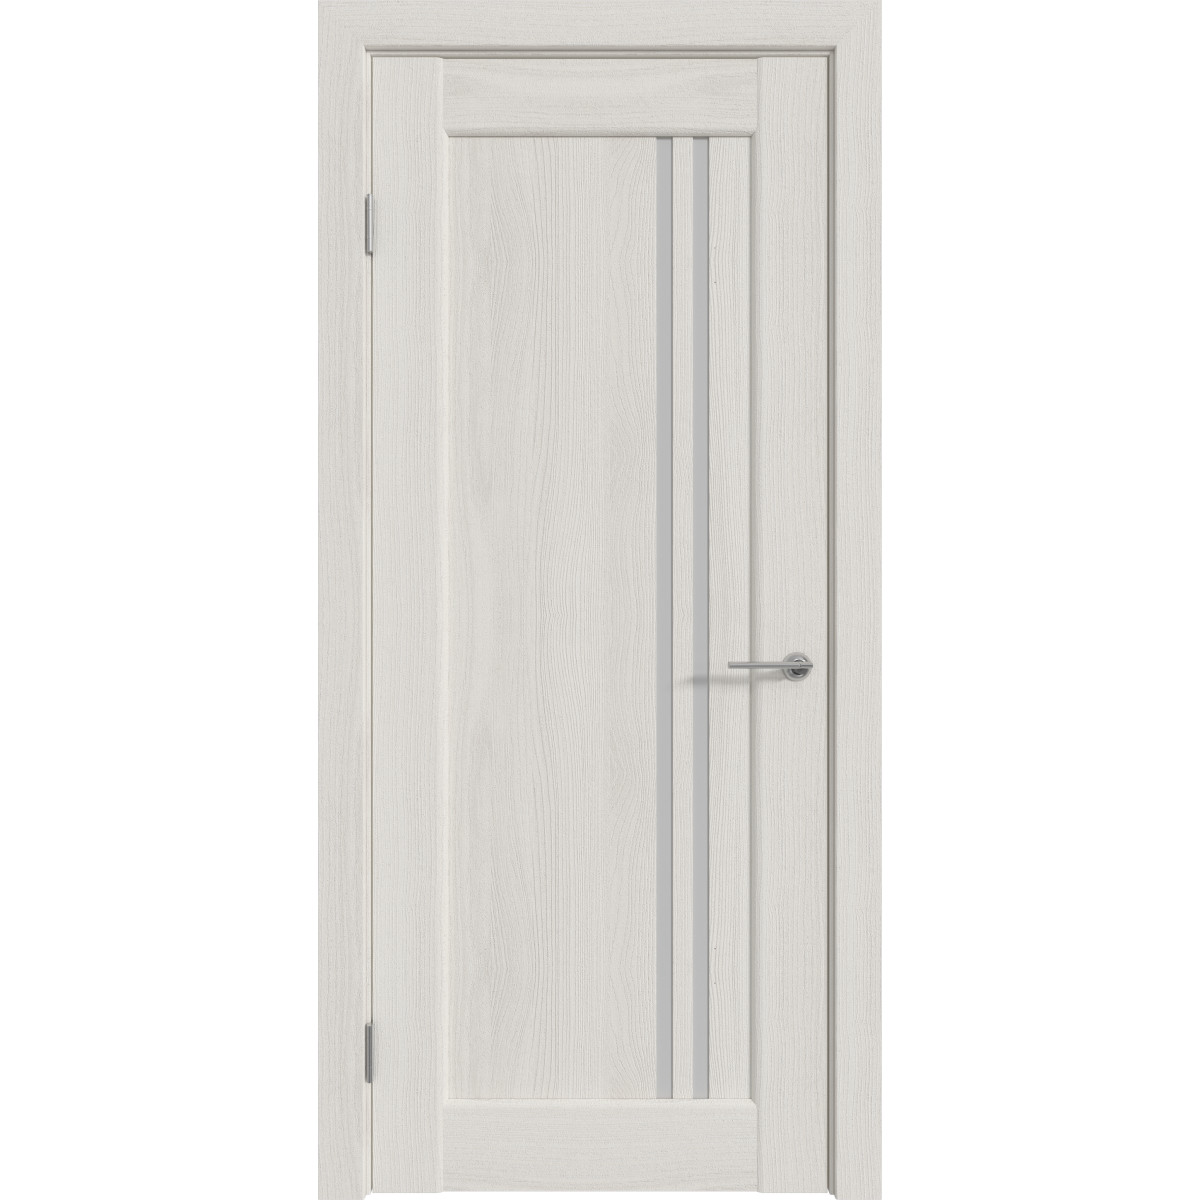 Дверь межкомнатная остеклённая с замком и петлями в комплекте Дельта вертикальная 90x200 см ПВХ цвет белёный дуб